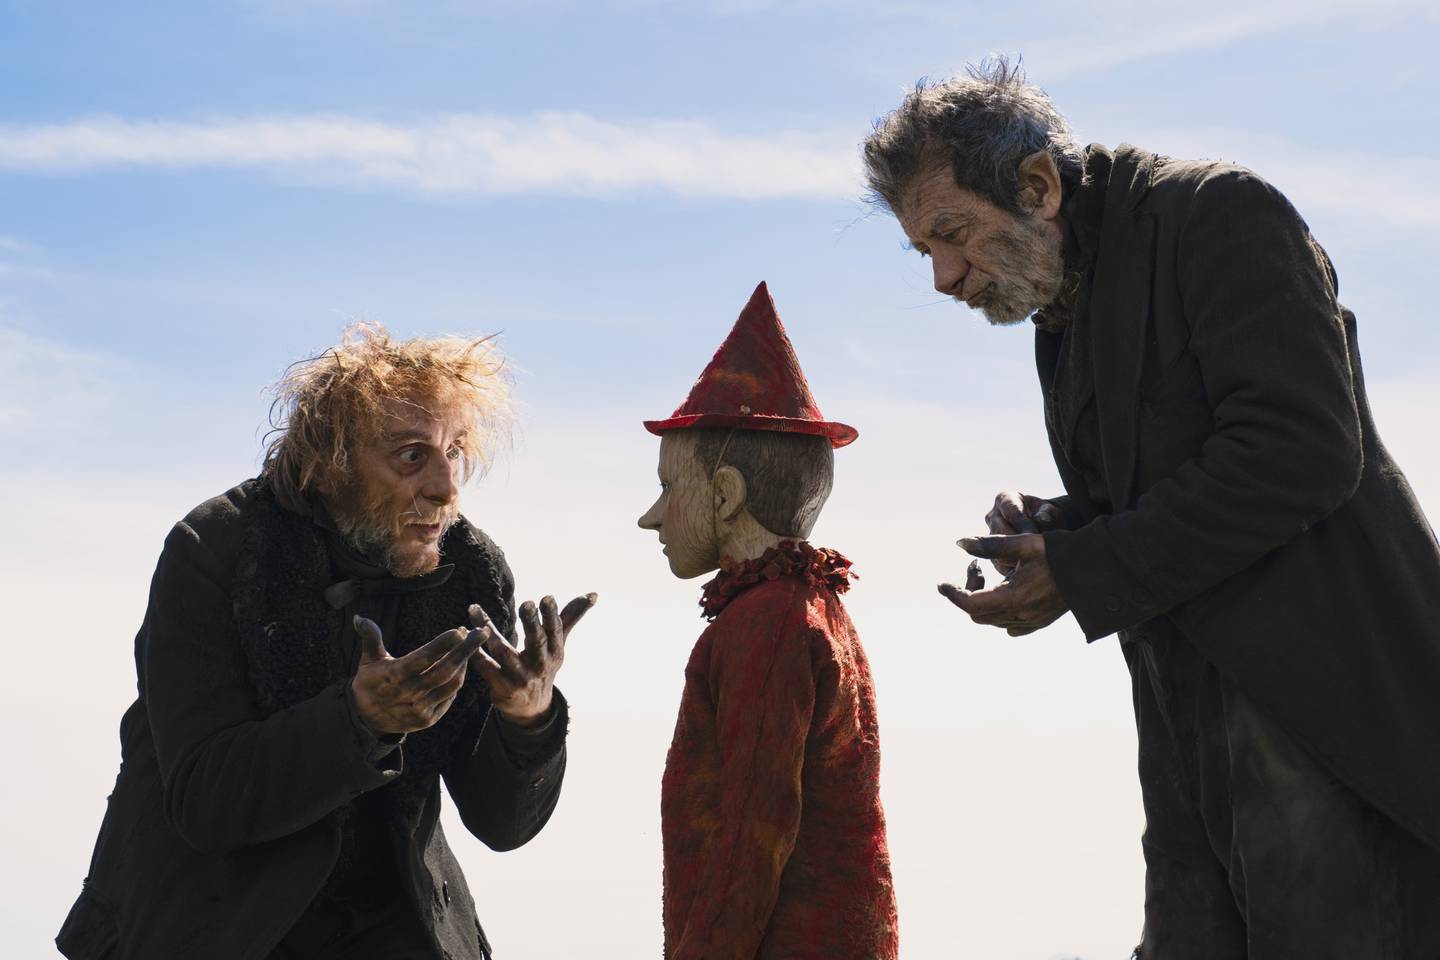 Filmen Pinocchio har kinopremiere i Norge 25. desember og er regissert av Matteo Garrone.